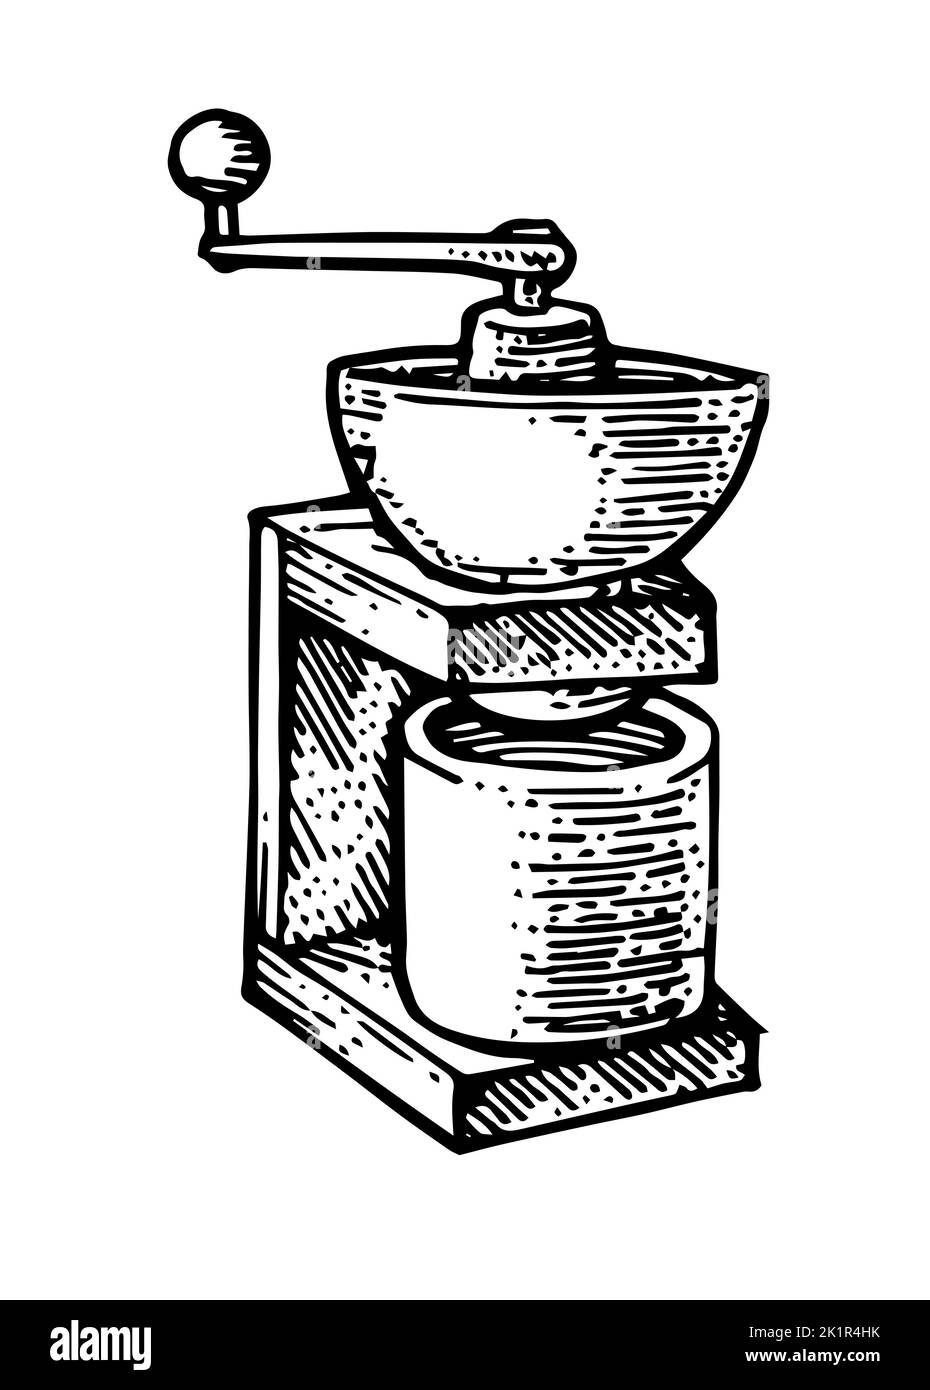 Universal Handmühle zur Herstellung von Mehl und gemahlenem Kaffee. Veraltete alte Retro-Technologie. Zu Pulver mahlen. Handgezeichnete Umrissskizze. Isoliert Stock Vektor